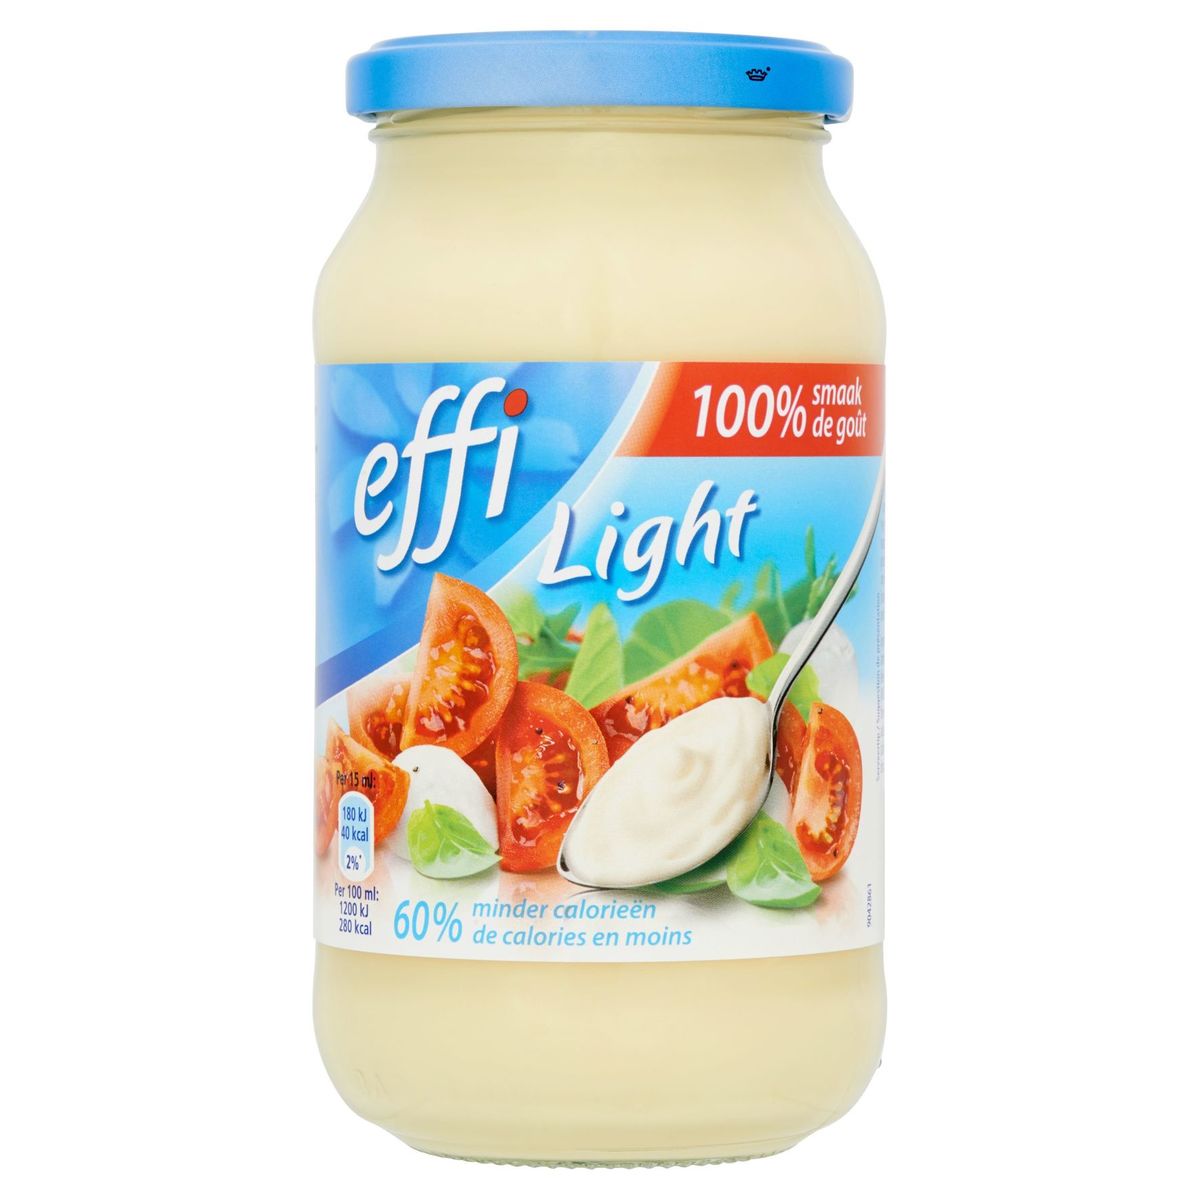 Effi Dressing Light 450 ml